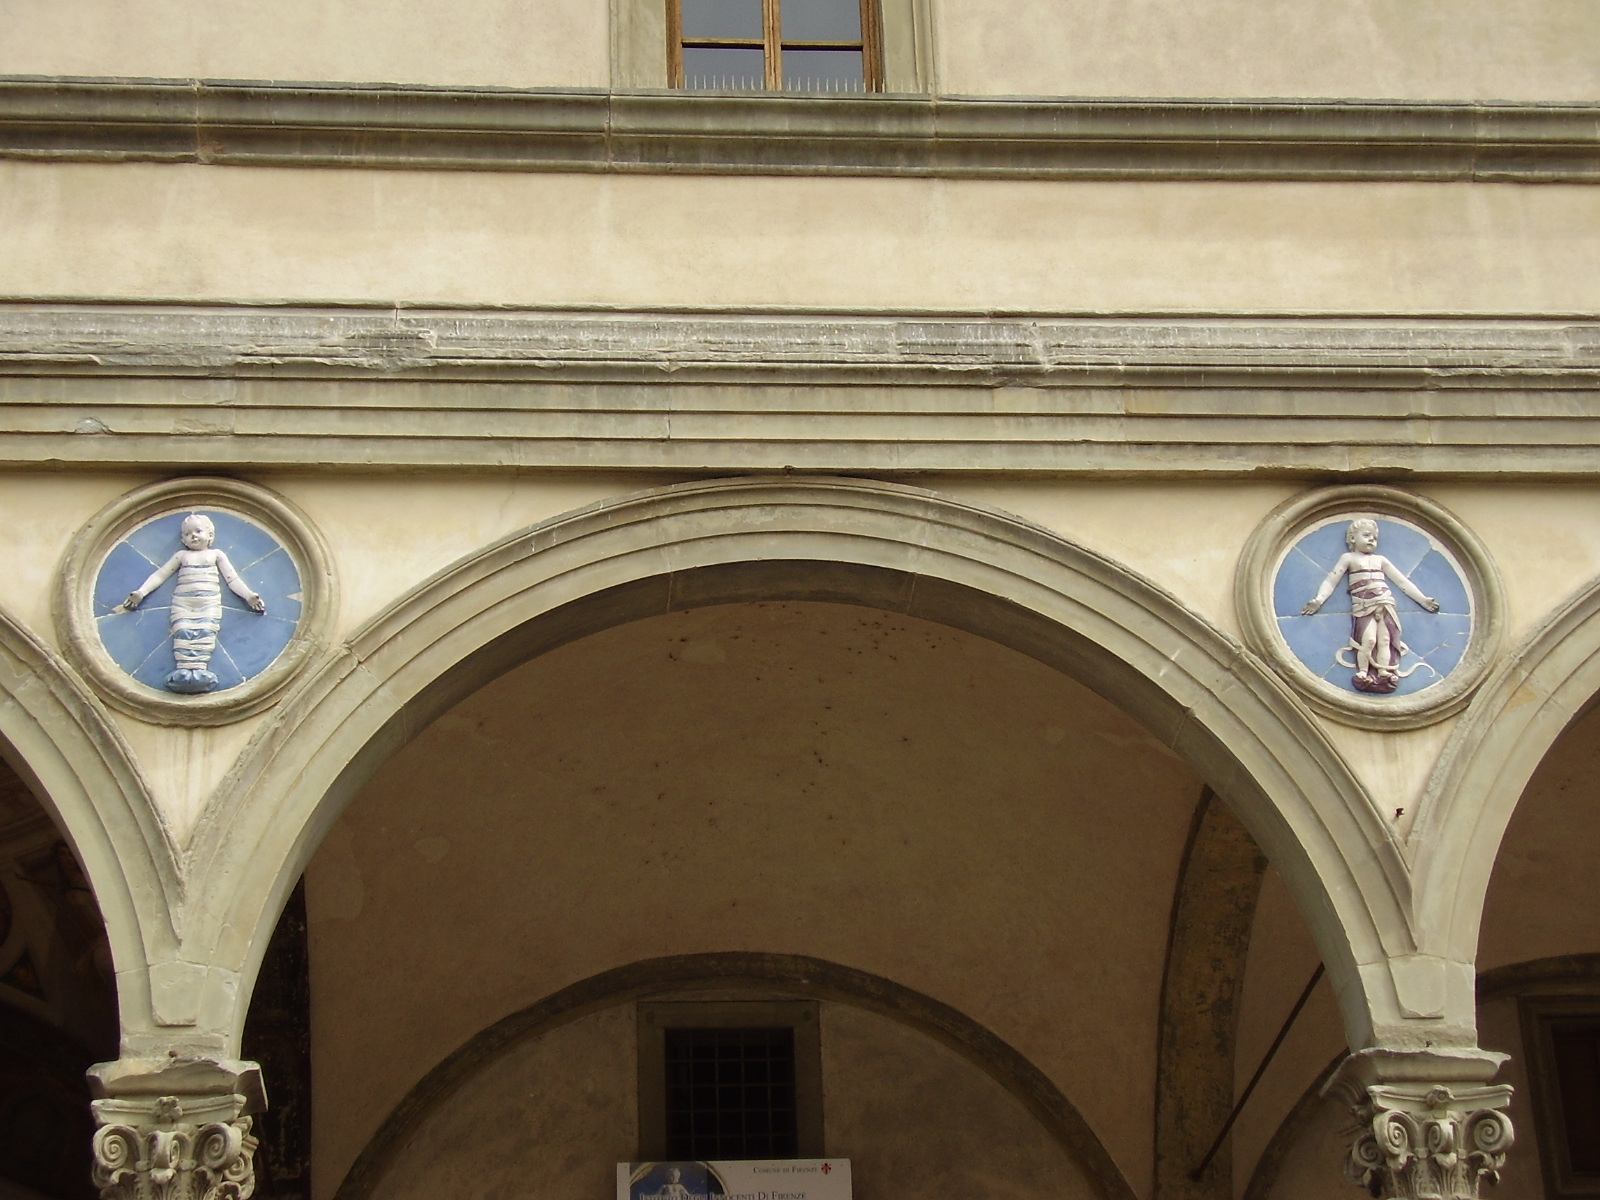 Andrea della Robbia’s Putti on the facade of the Istituto degli Innocenti